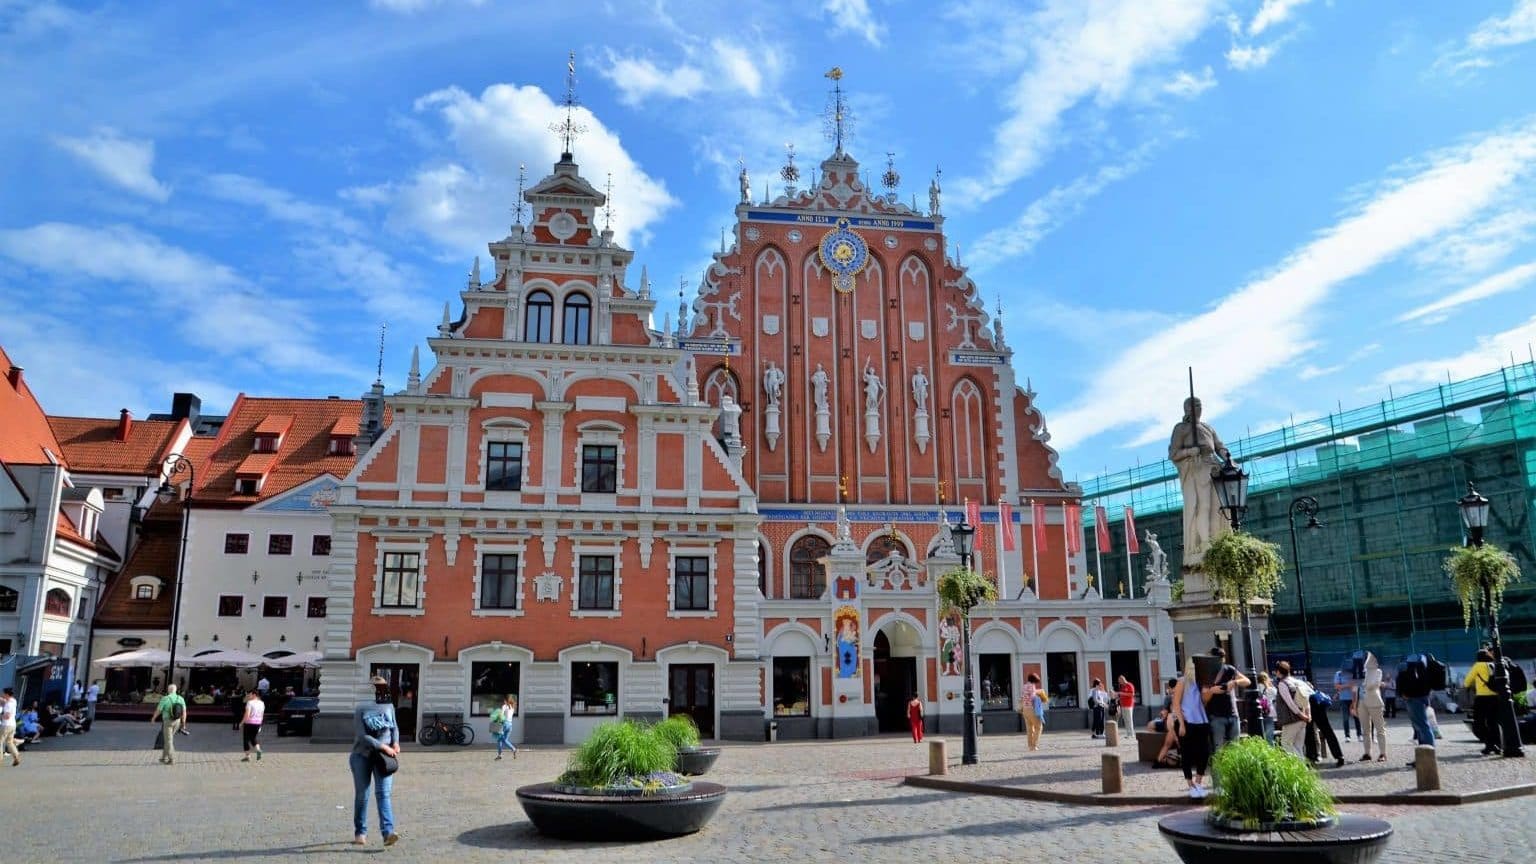 Sehenswürdigkeiten Riga